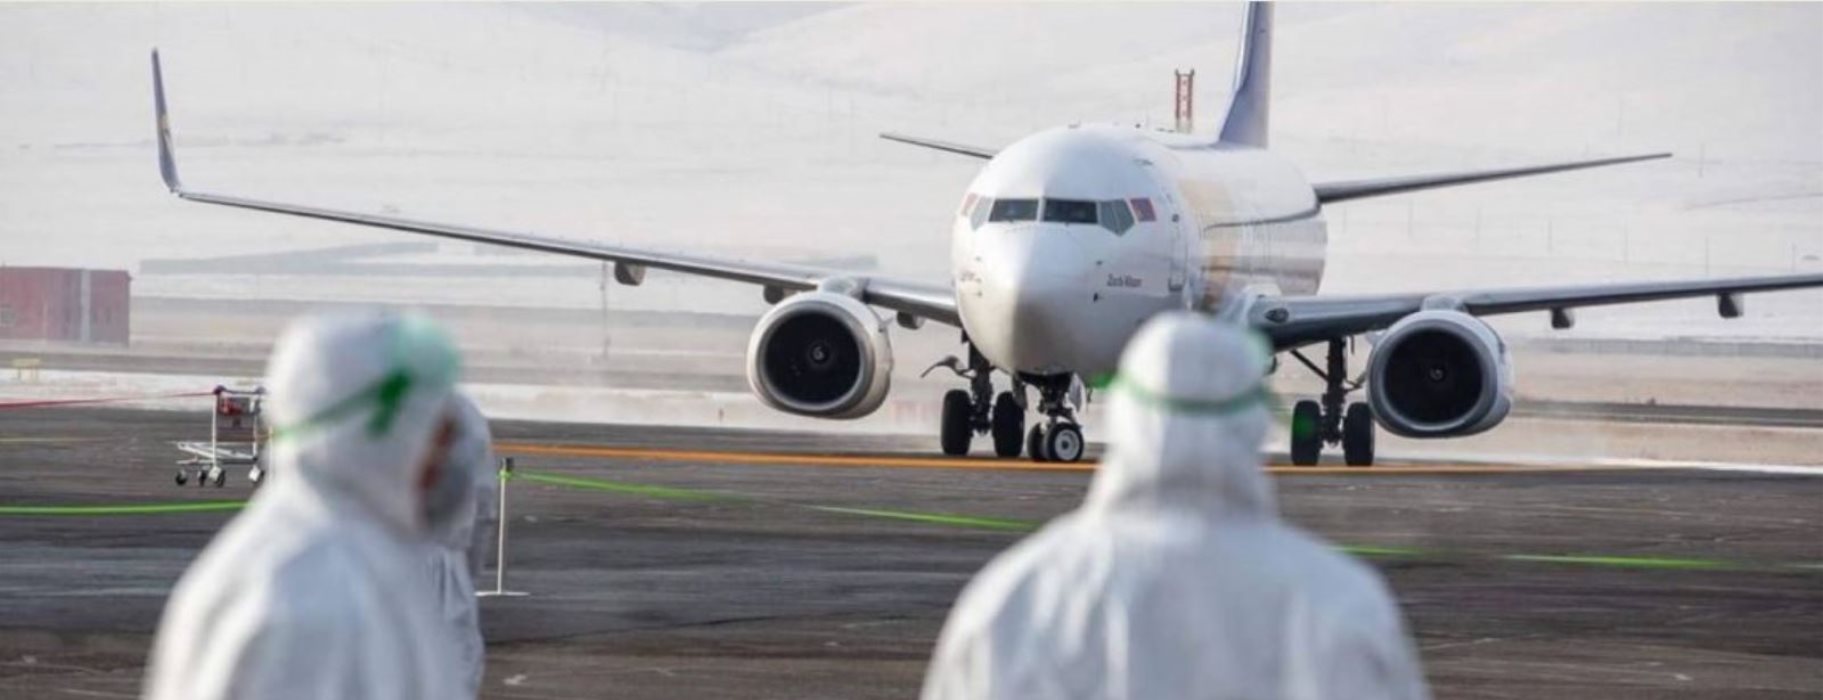 Κύπρος: Στις 9 Ιουνίου ανοίγει τα αεροδρόμια για Ελλάδα – Πότε τα ξενοδοχεία;